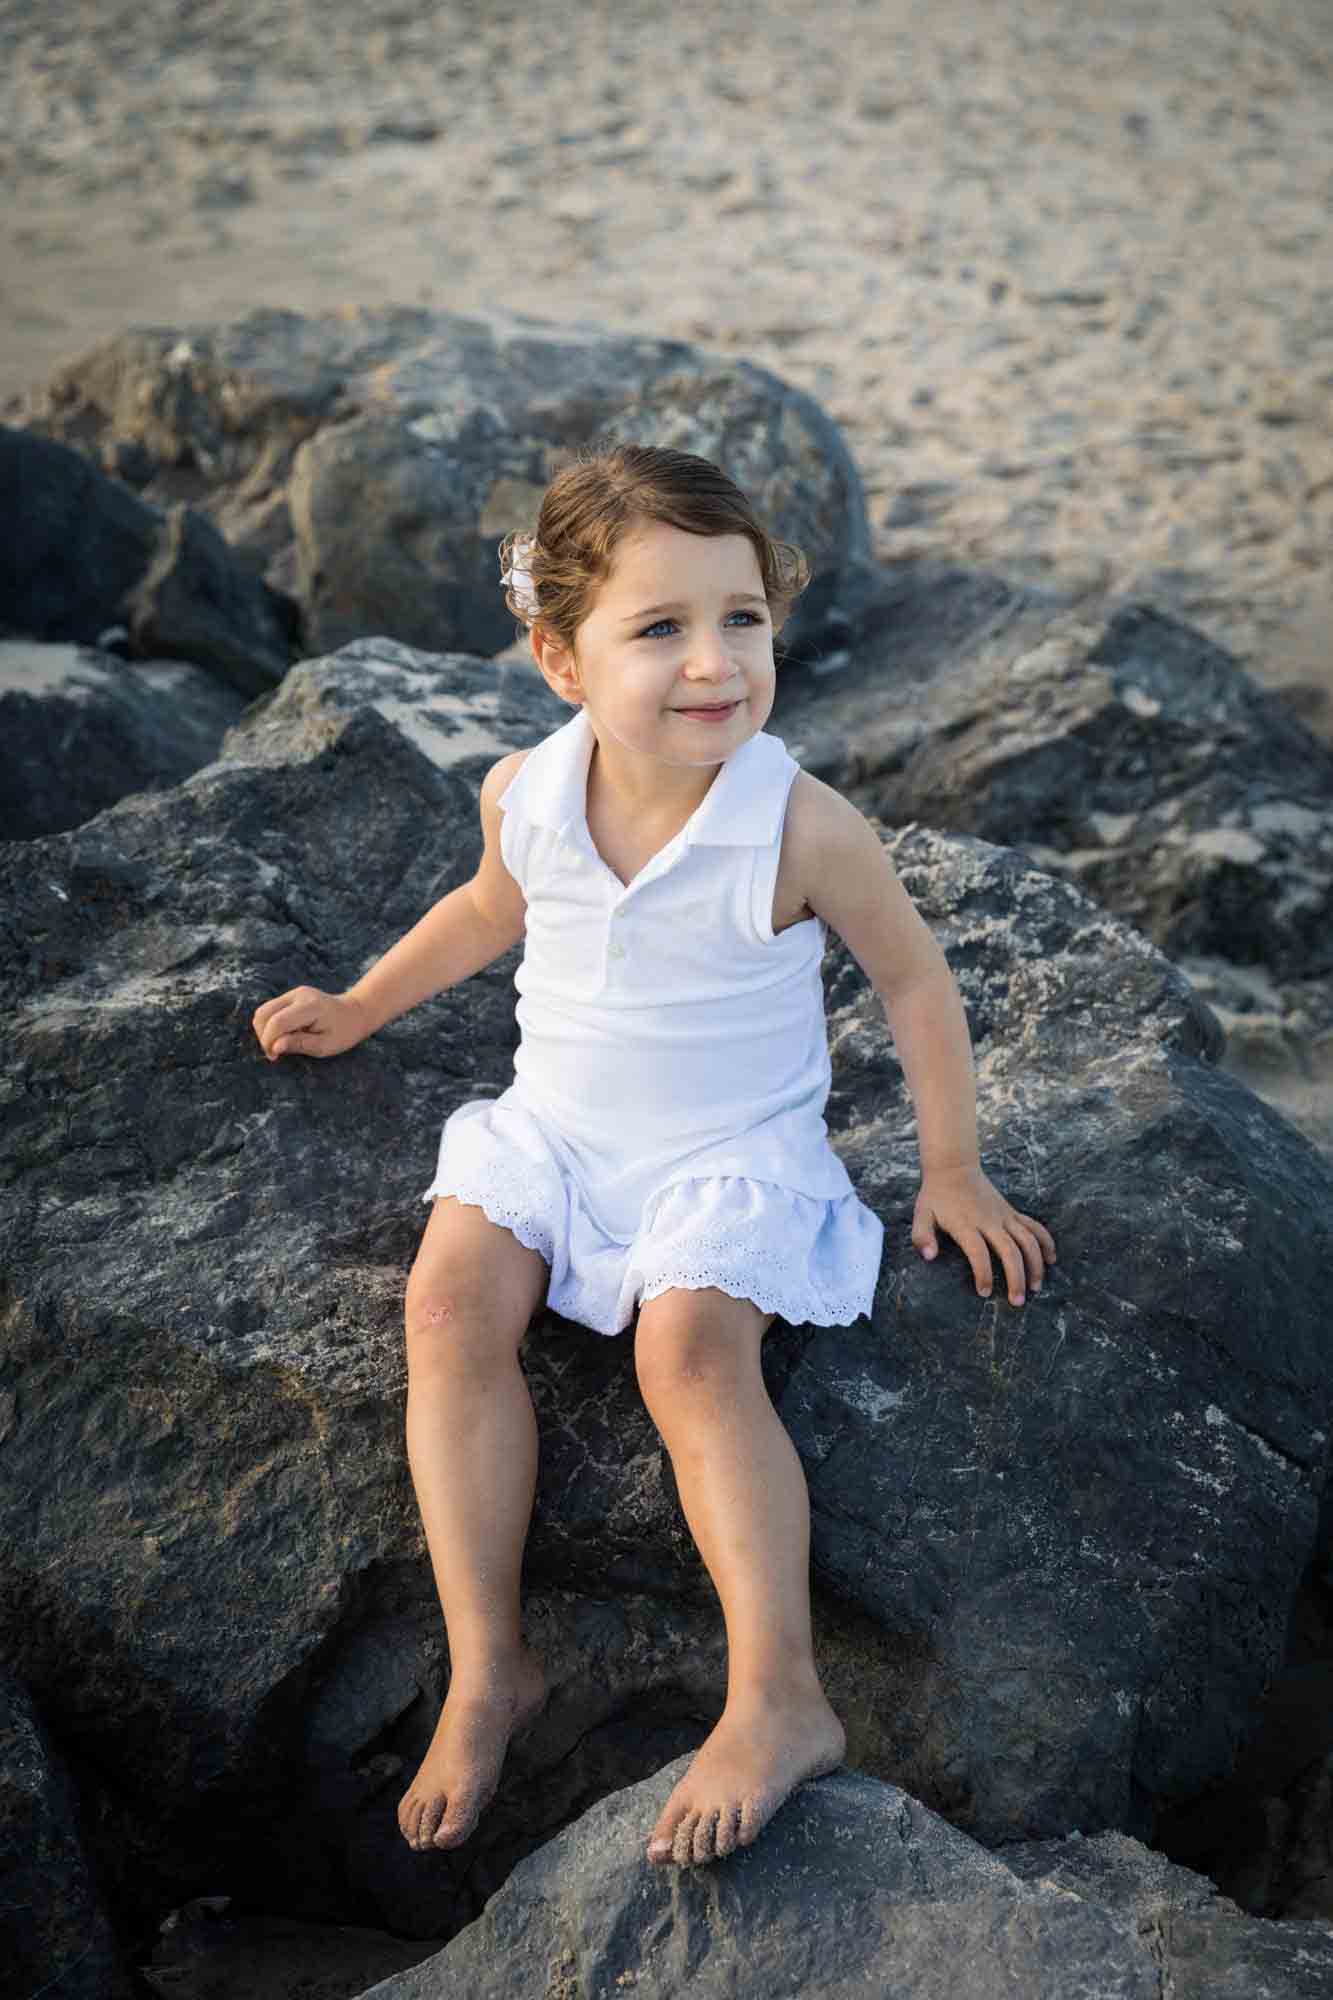 Beach family portrait of little girl in white dress sitting on rocks